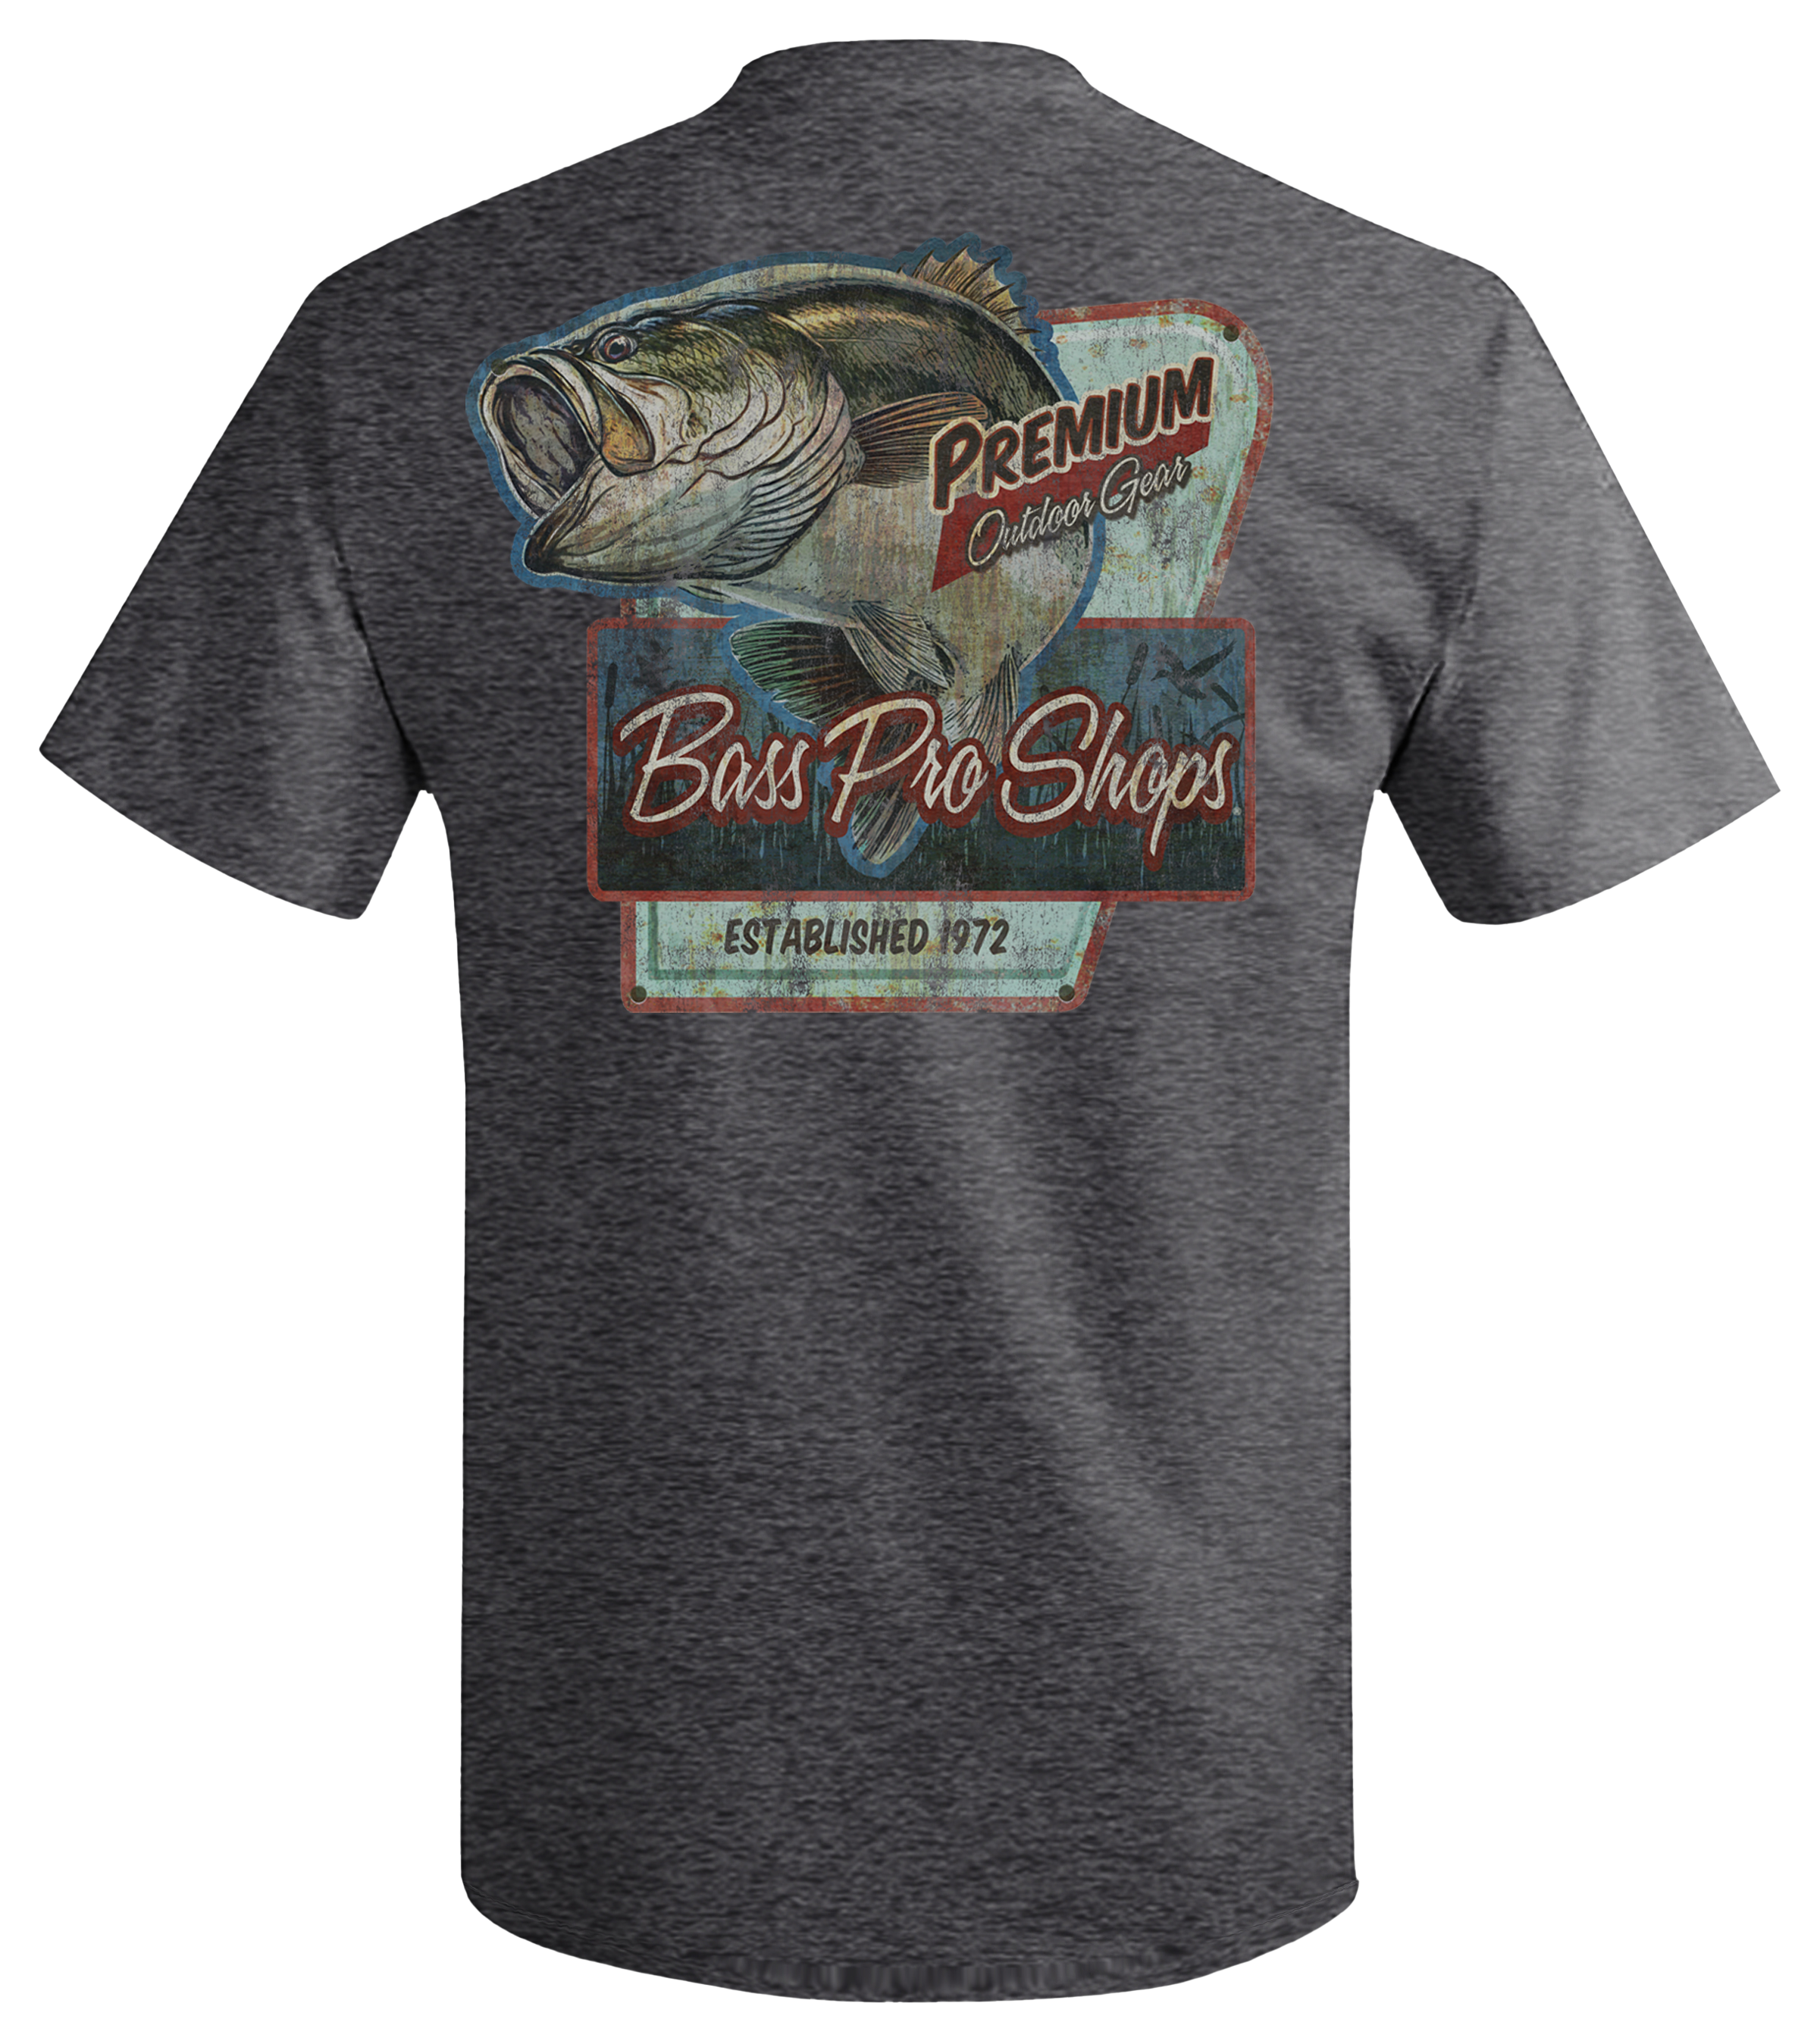 Bass Pro Shops Vintage Wildlife Sign Short-Sleeve T-Shirt for Men